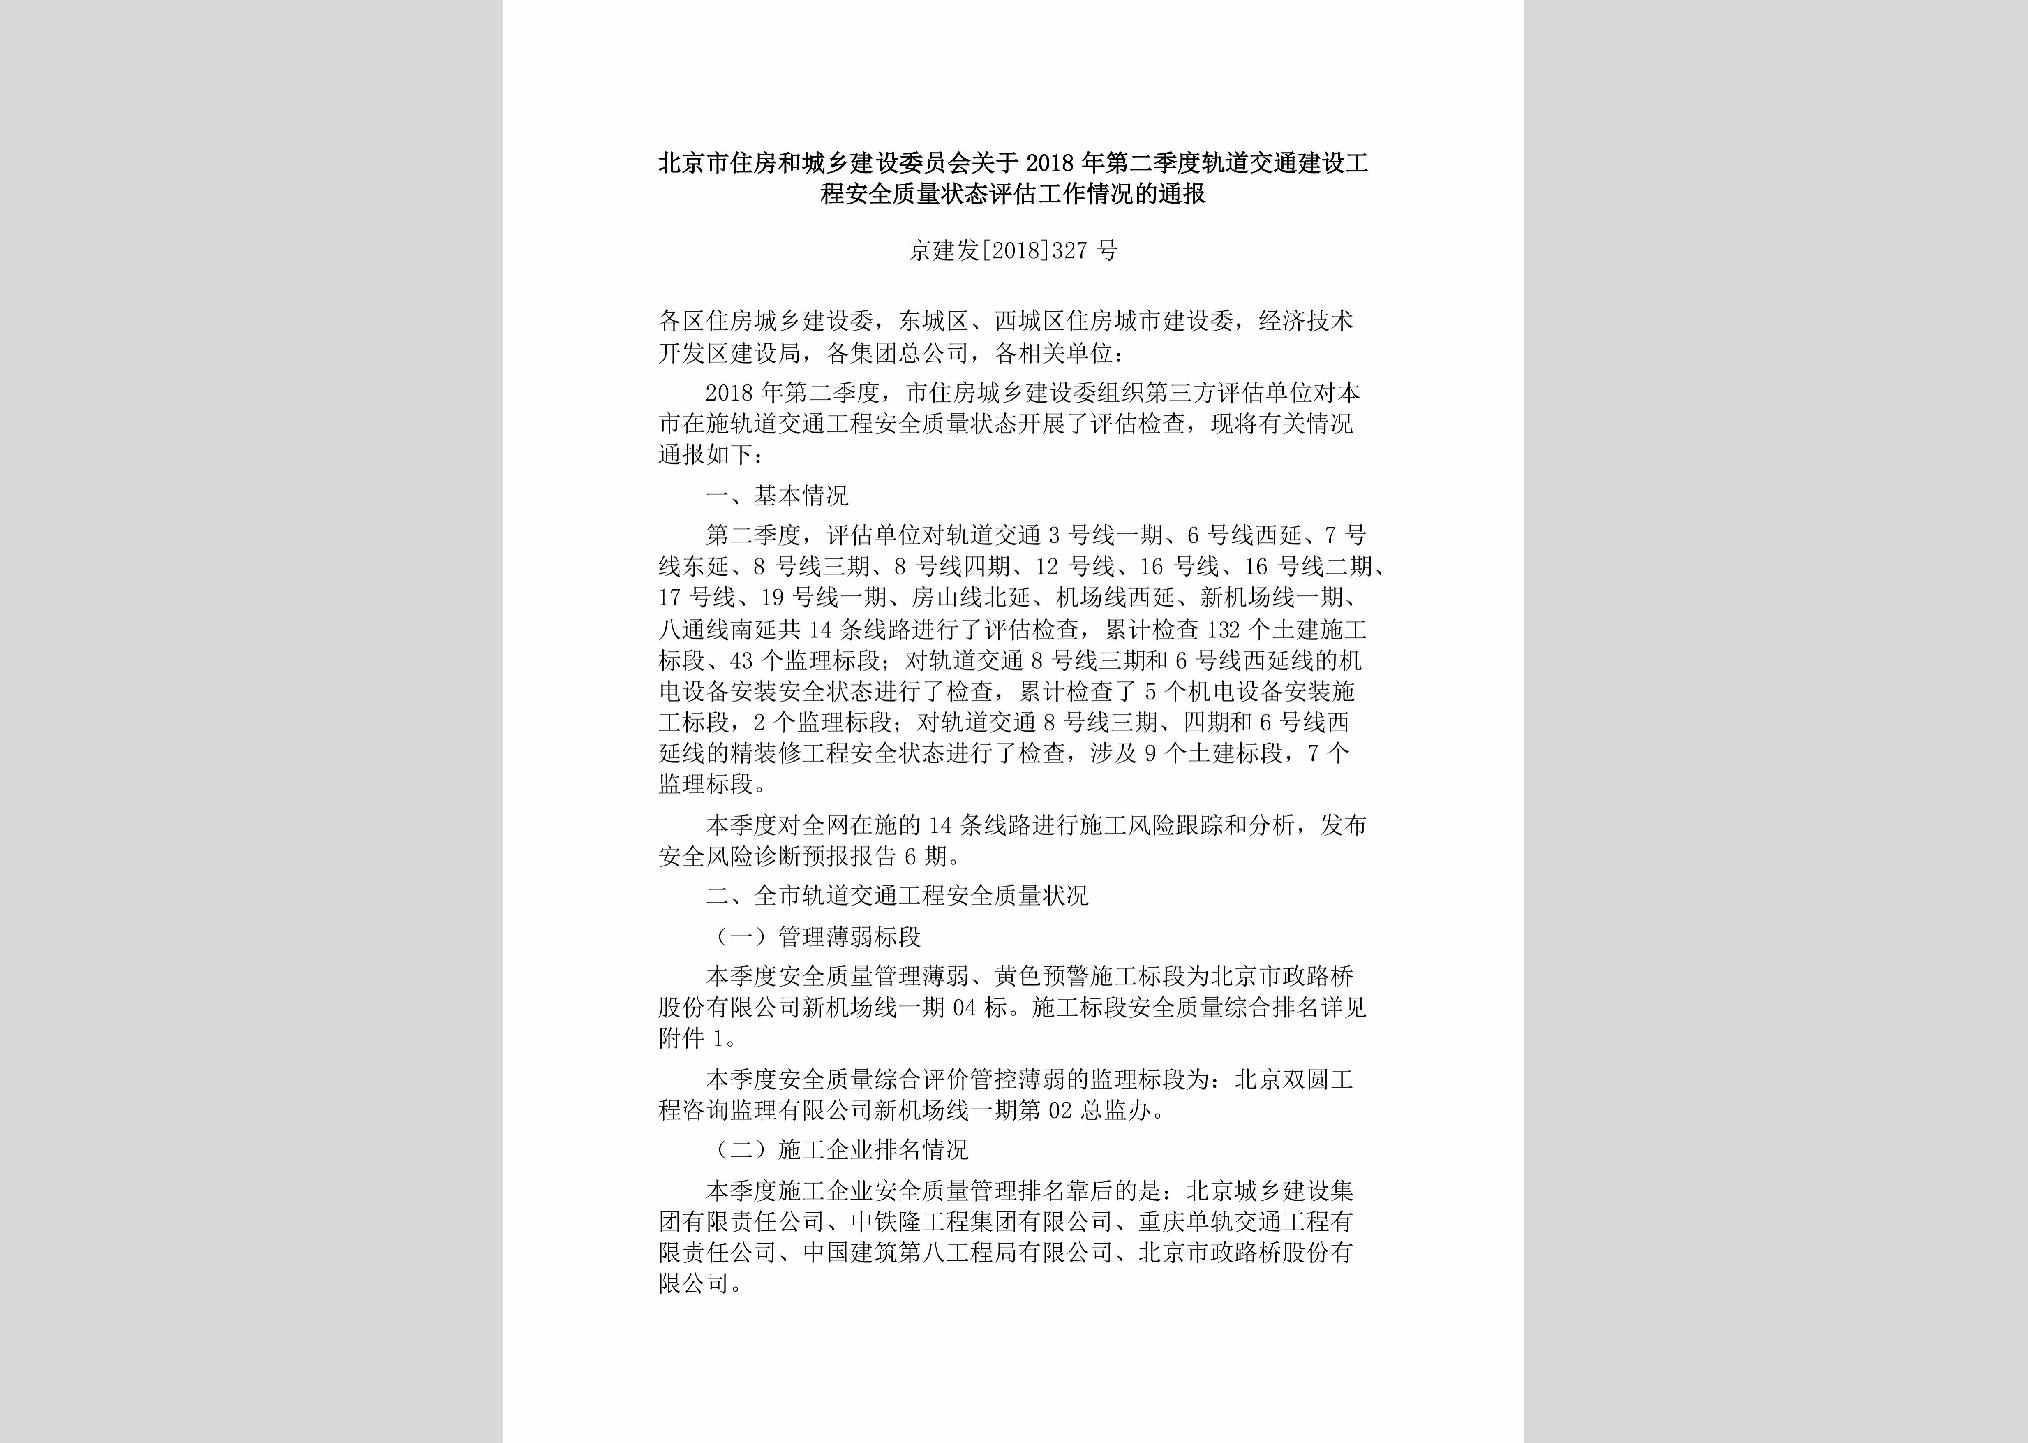 京建发[2018]327号：北京市住房和城乡建设委员会关于2018年第二季度轨道交通建设工程安全质量状态评估工作情况的通报